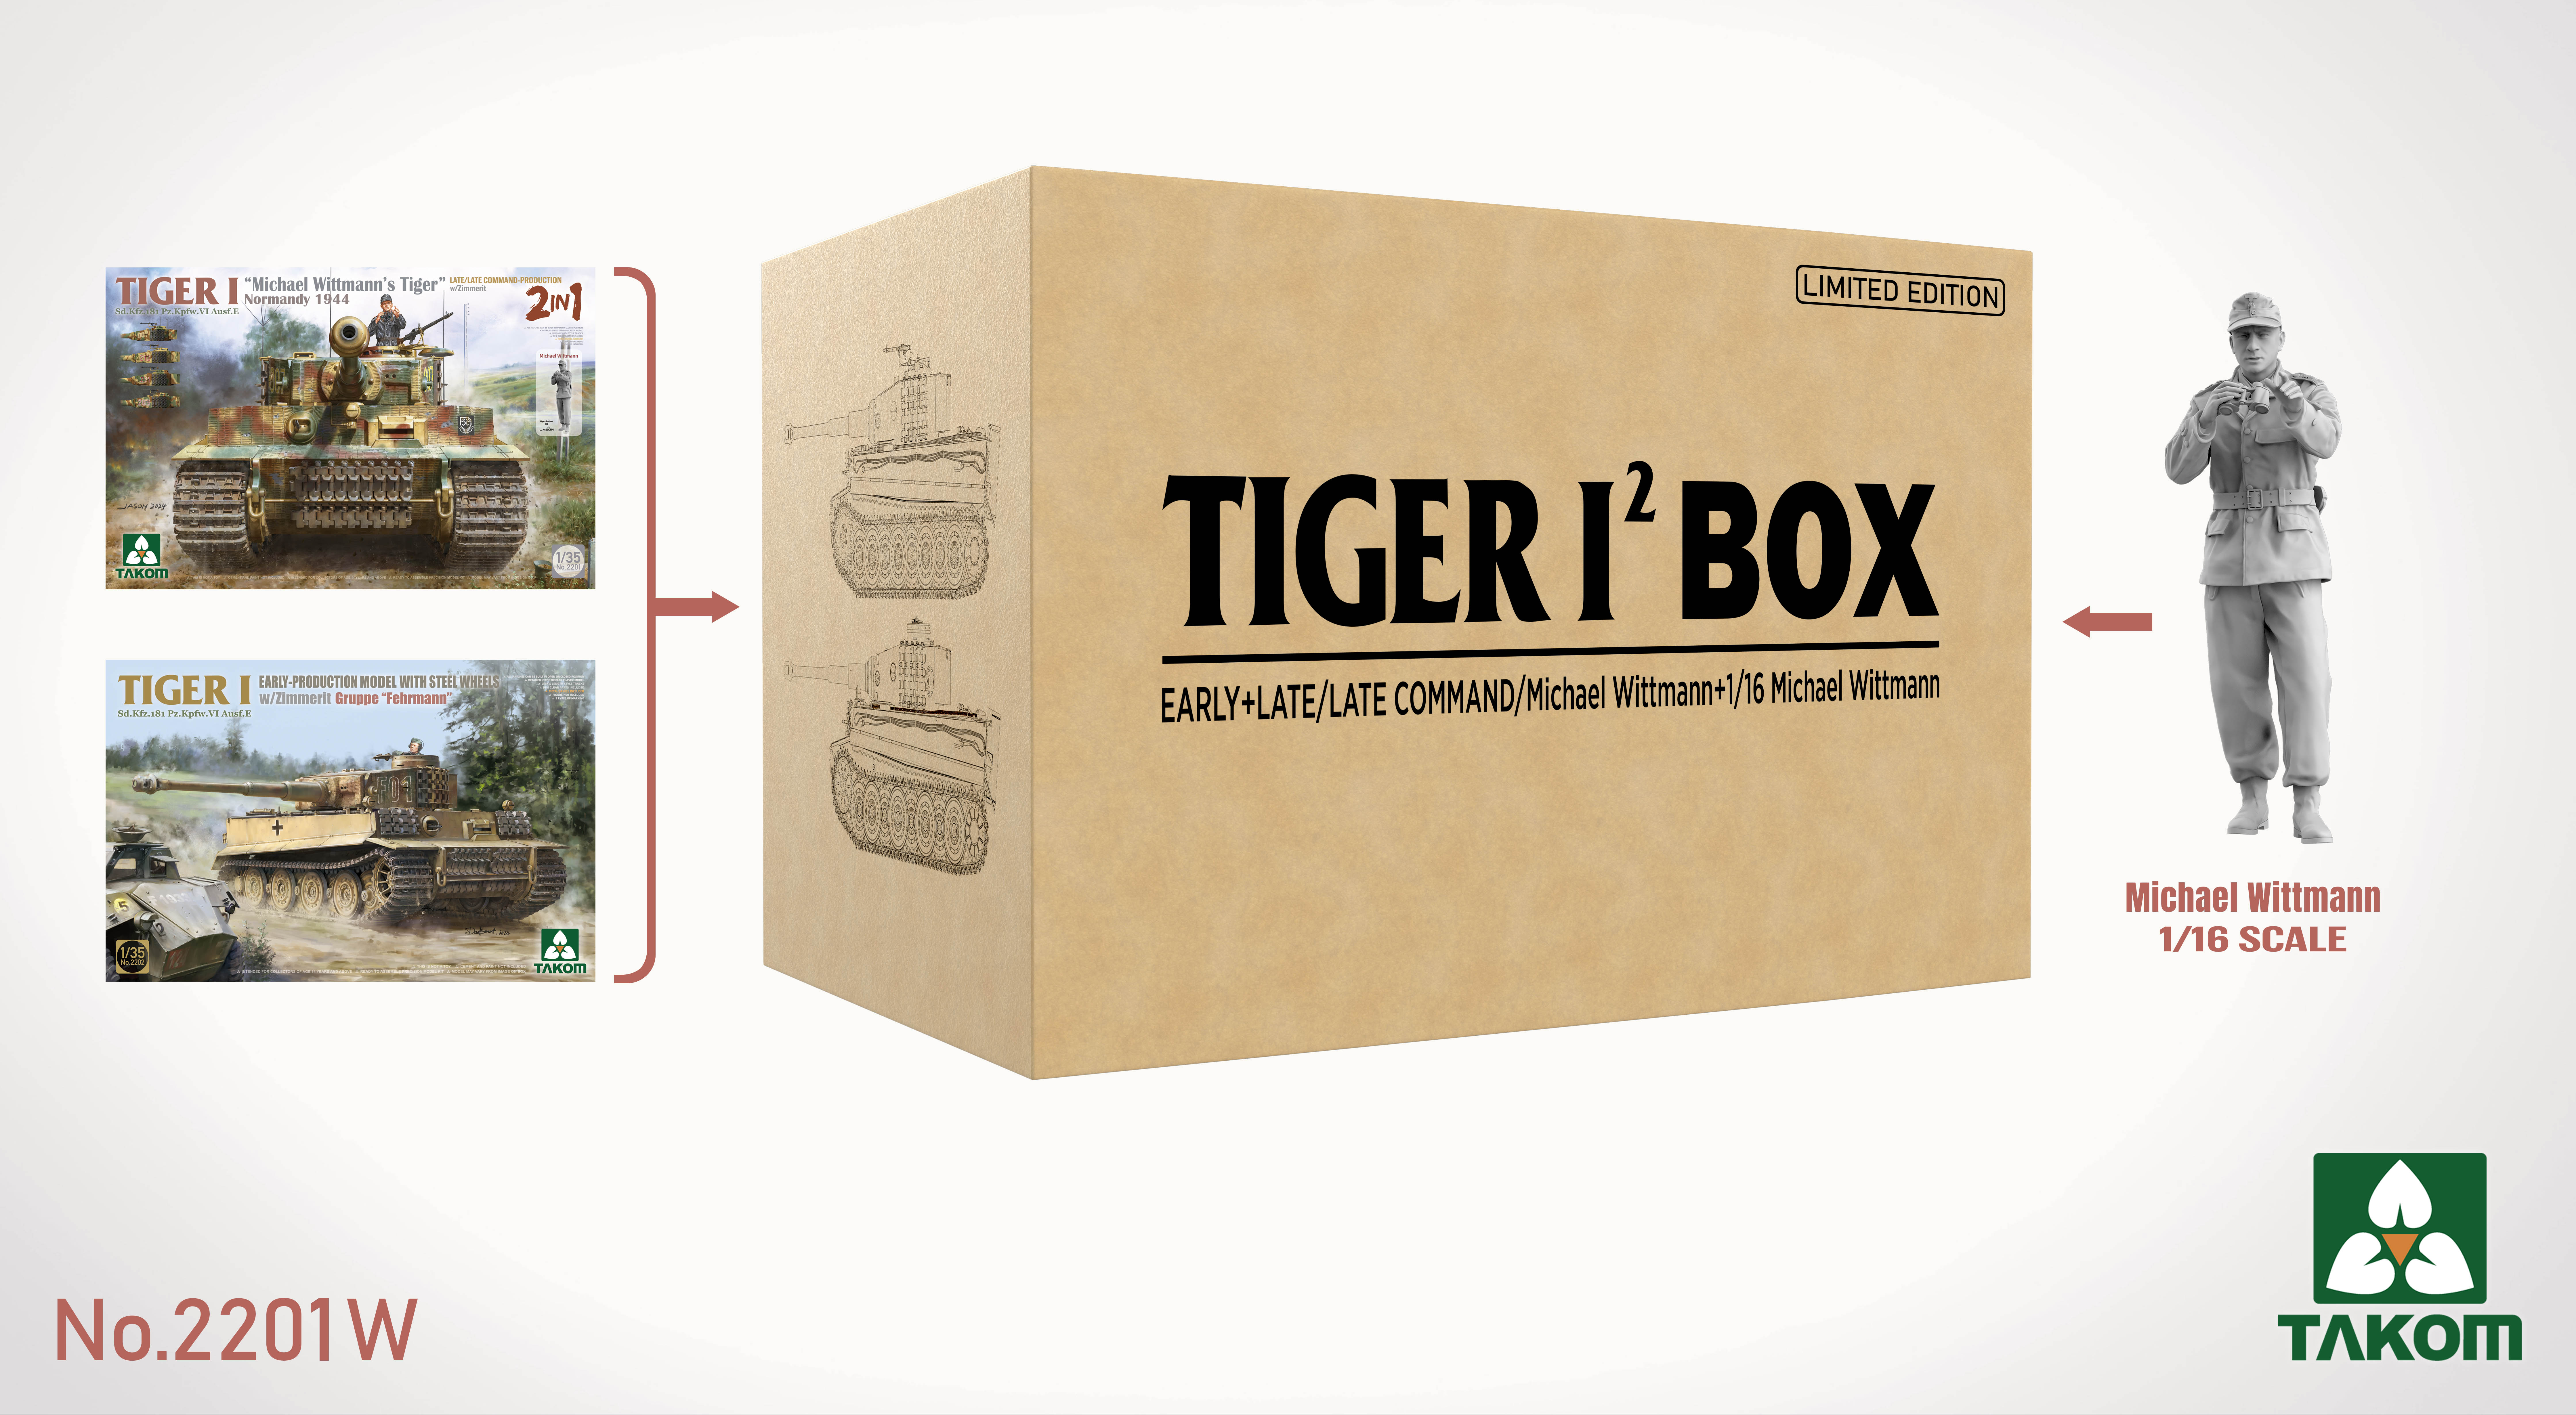 TIGER I BIG BOX 2 kits & 1:16 Michael Wittmann figure